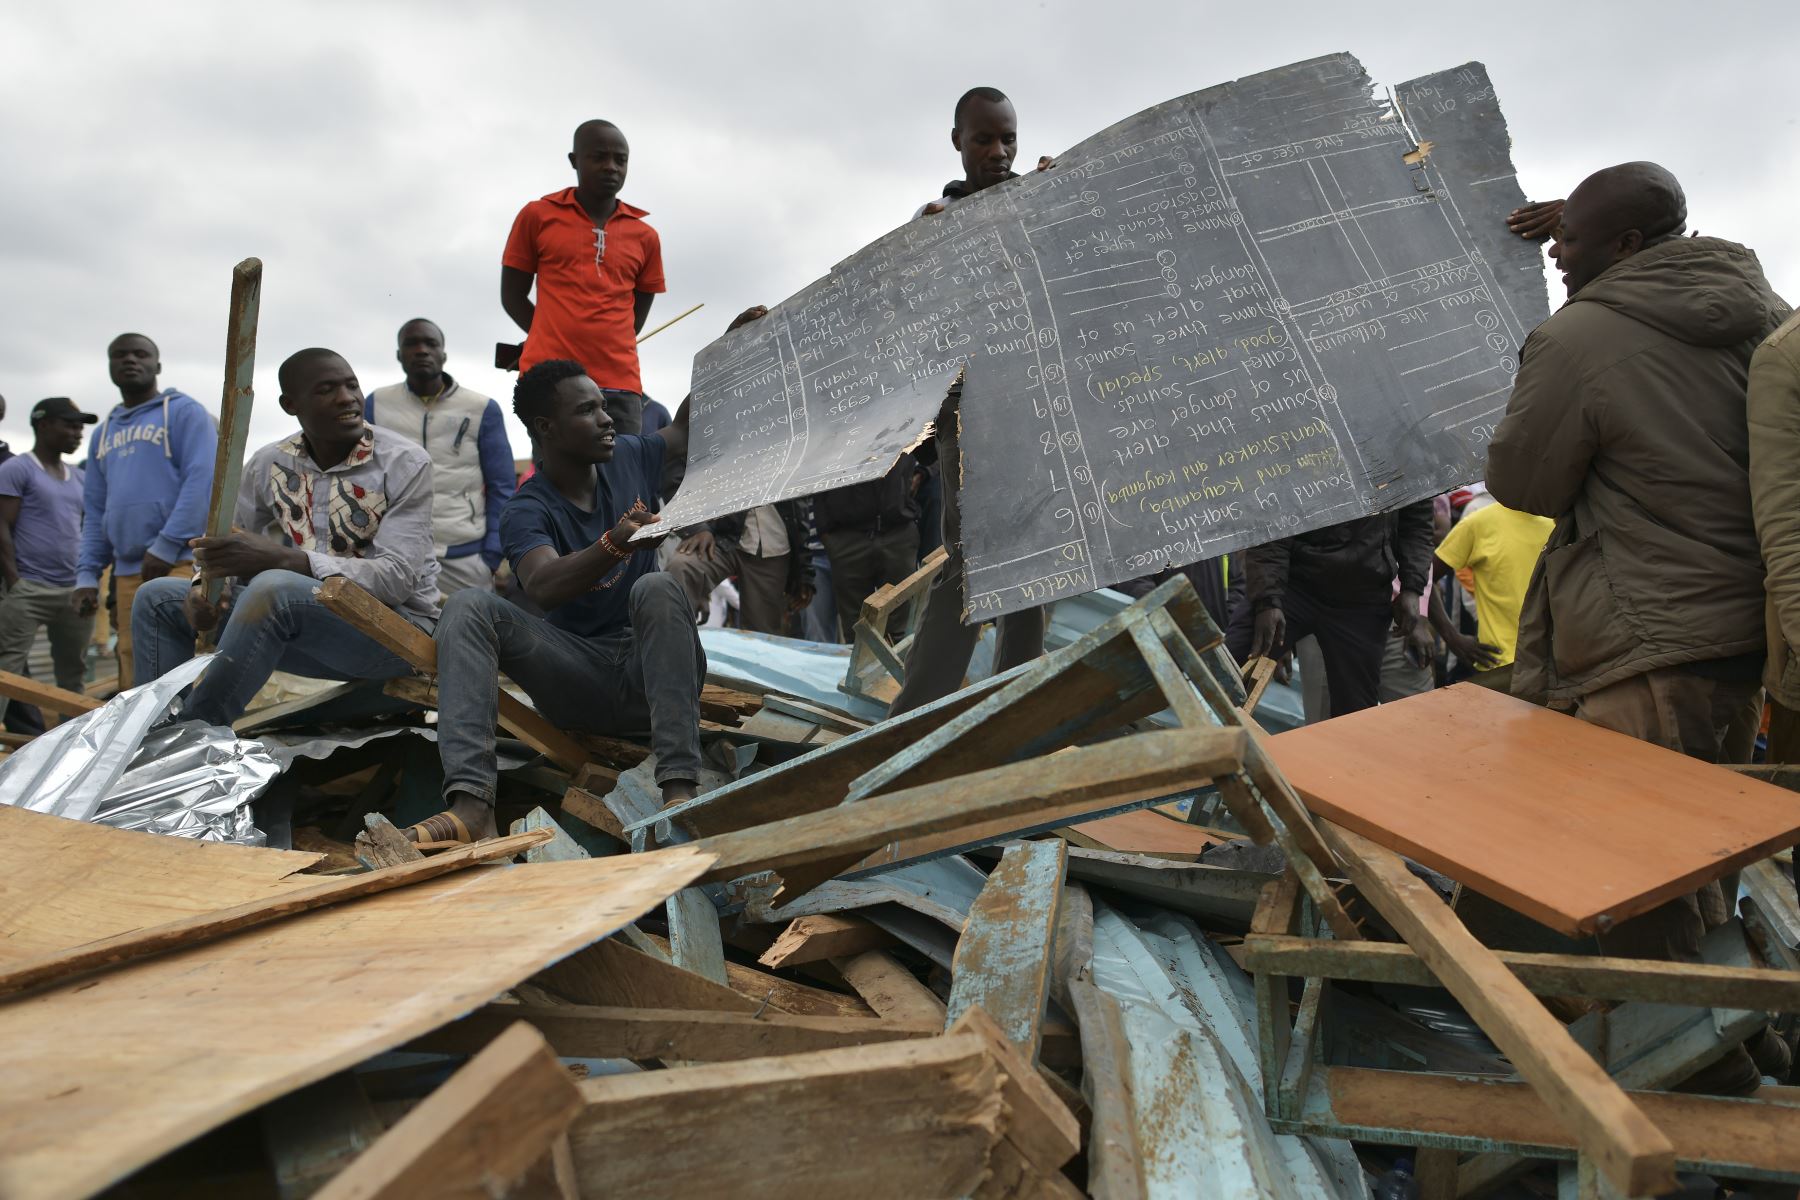 Las personas se paran sobre los escombros donde un bloque de aulas se derrumbó en la escuela primaria Precious Talents en el distrito electoral de Dagoretti en Nairobi.
Foto: AFP